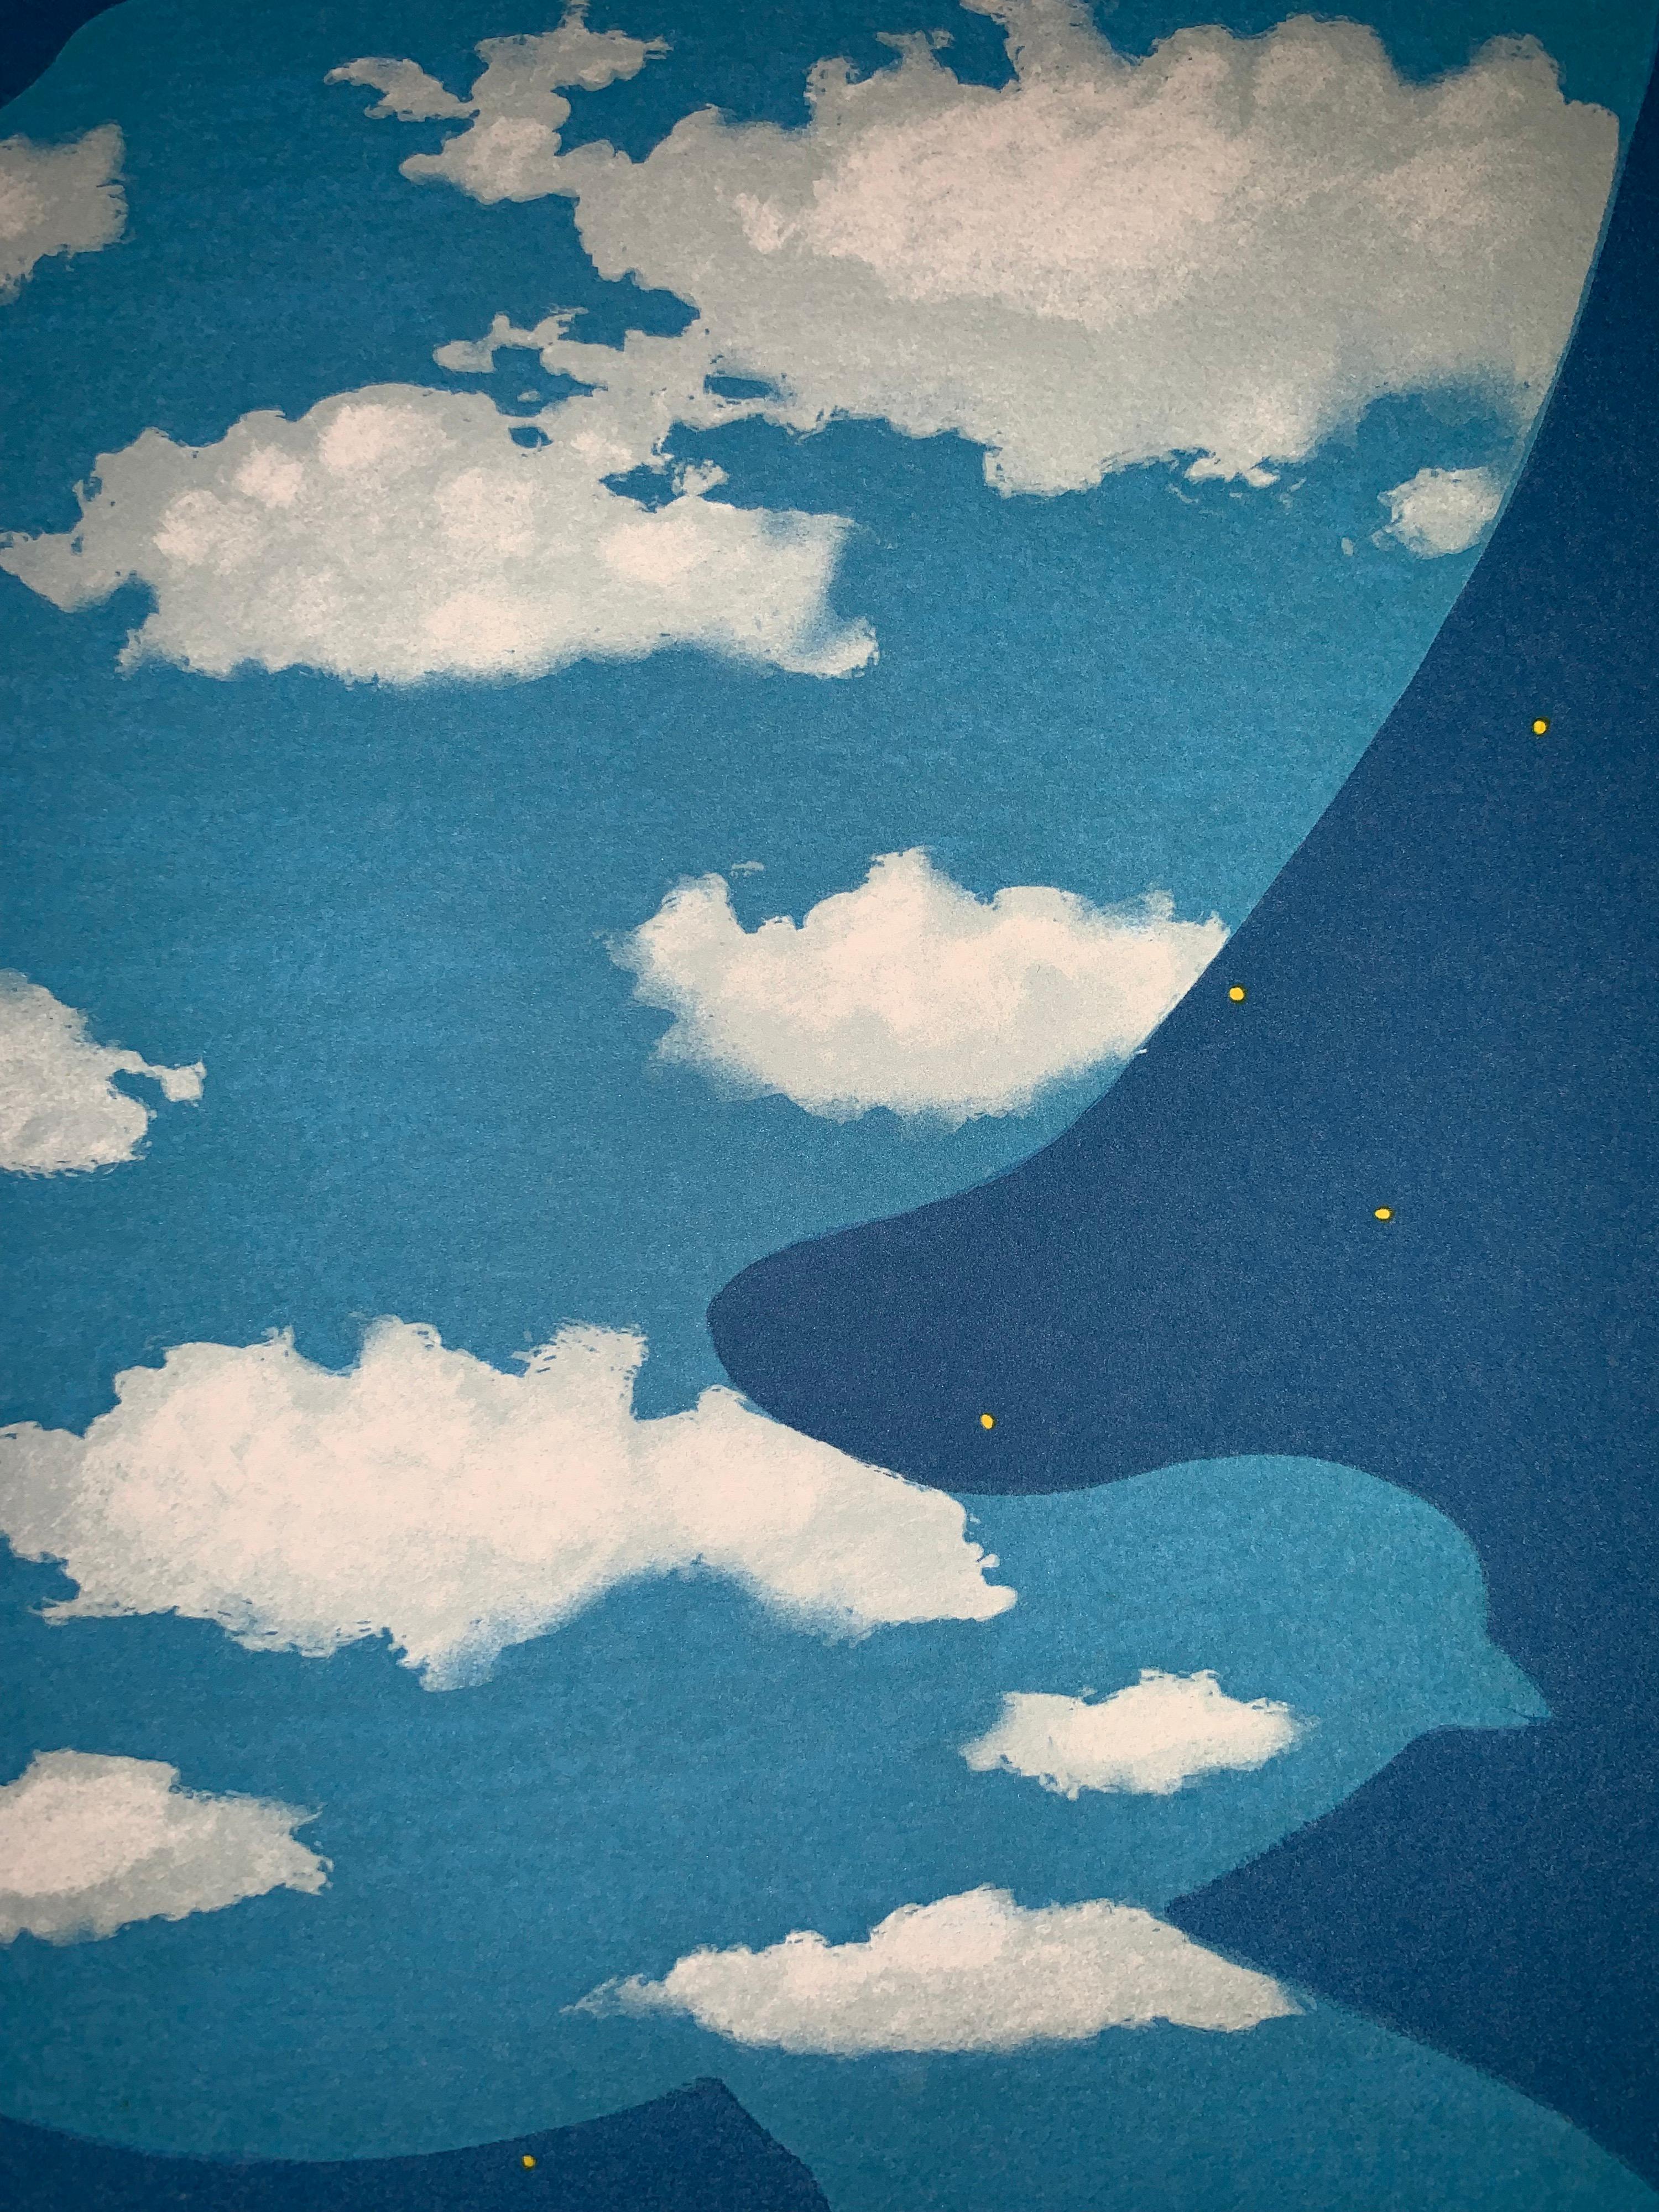 Lithographie en couleur d'après l'huile sur toile de René Magritte de 1940, signature imprimée de Magritte et numérotée de l'édition de 300. 
La lithographie porte les timbres secs de la Fondation Magritte et de l'ADAGP et est contresignée au crayon